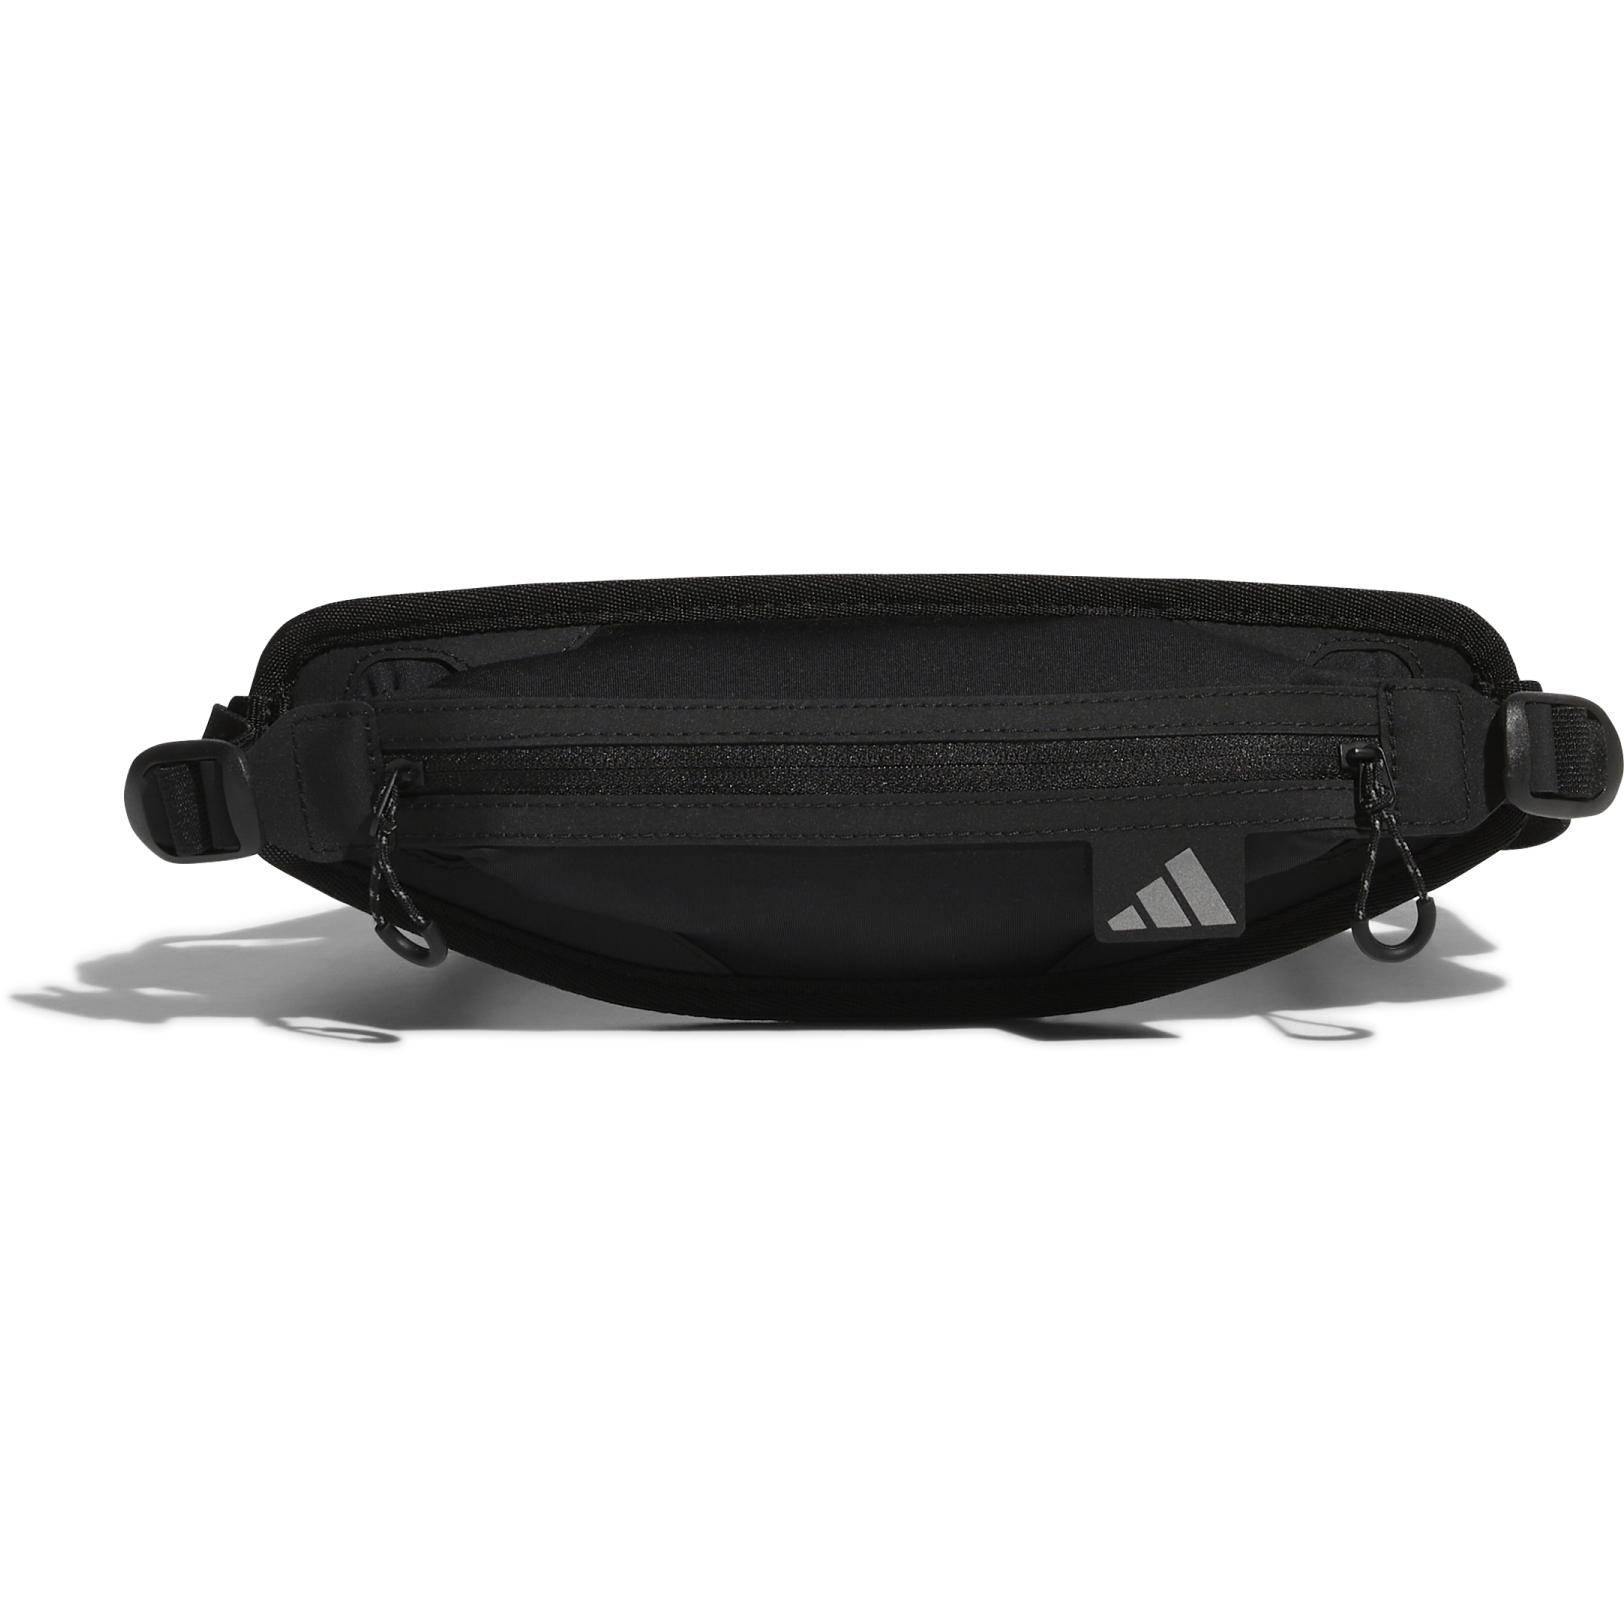 Produktbild von adidas Running Hüfttasche - schwarz HN8171